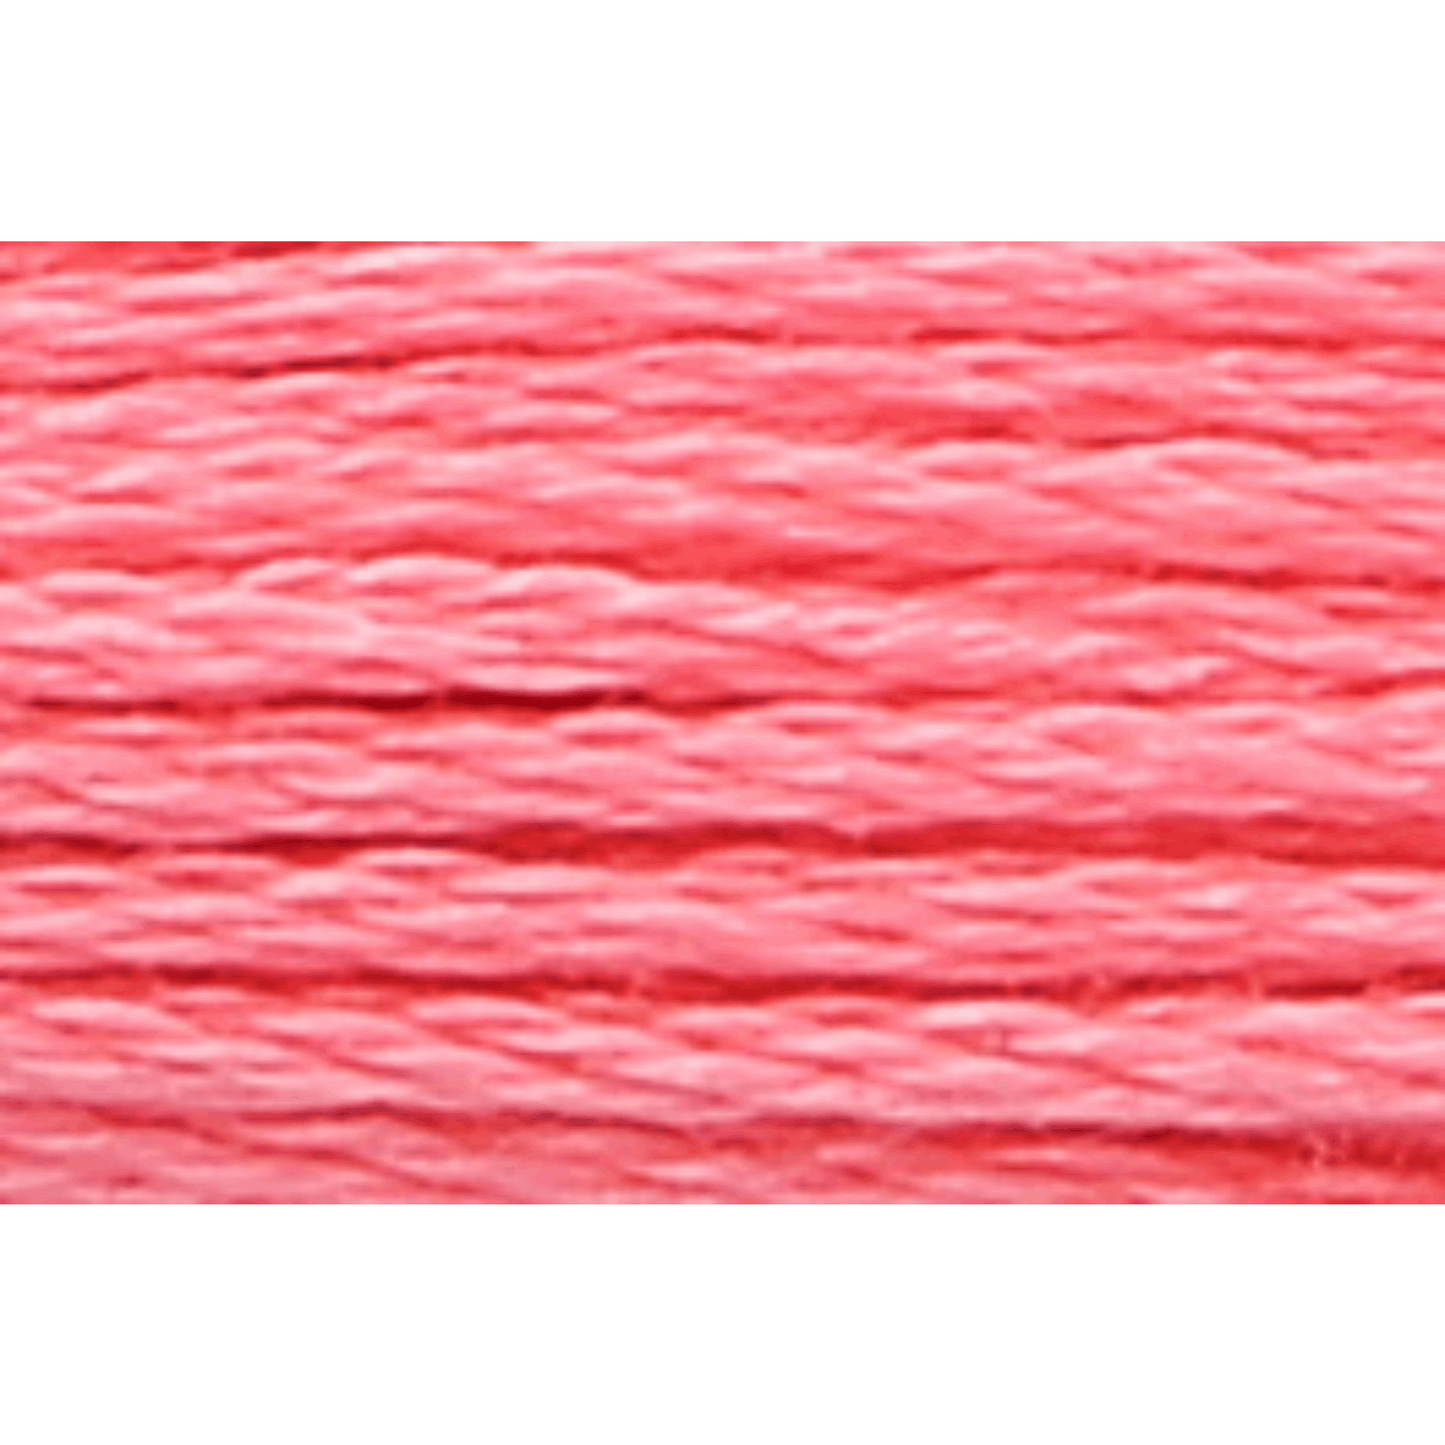 Anchor embroidery thread, 2g, colour 31 light azalea